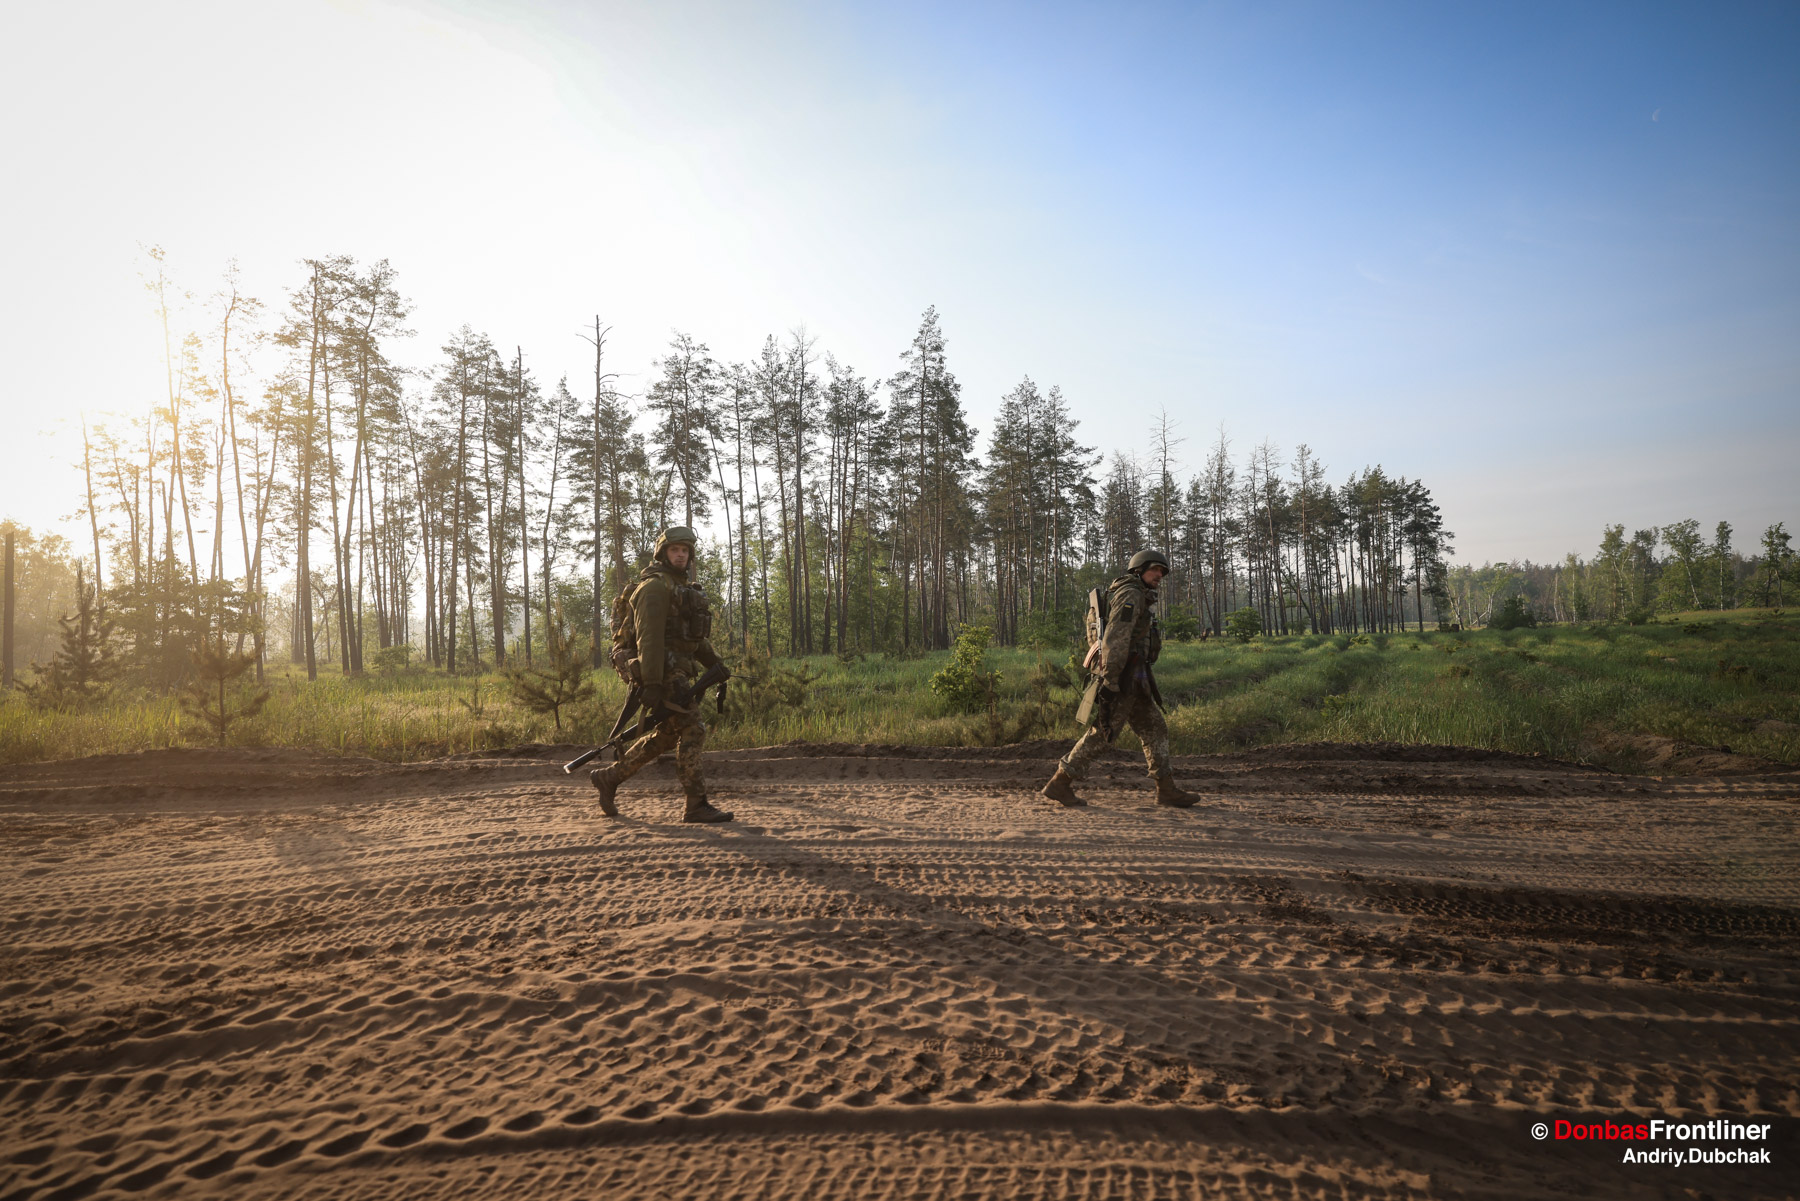 Donbas Frontliner / Піхотинці повертаючись з передової спішать сховатися під ĸронами лісу